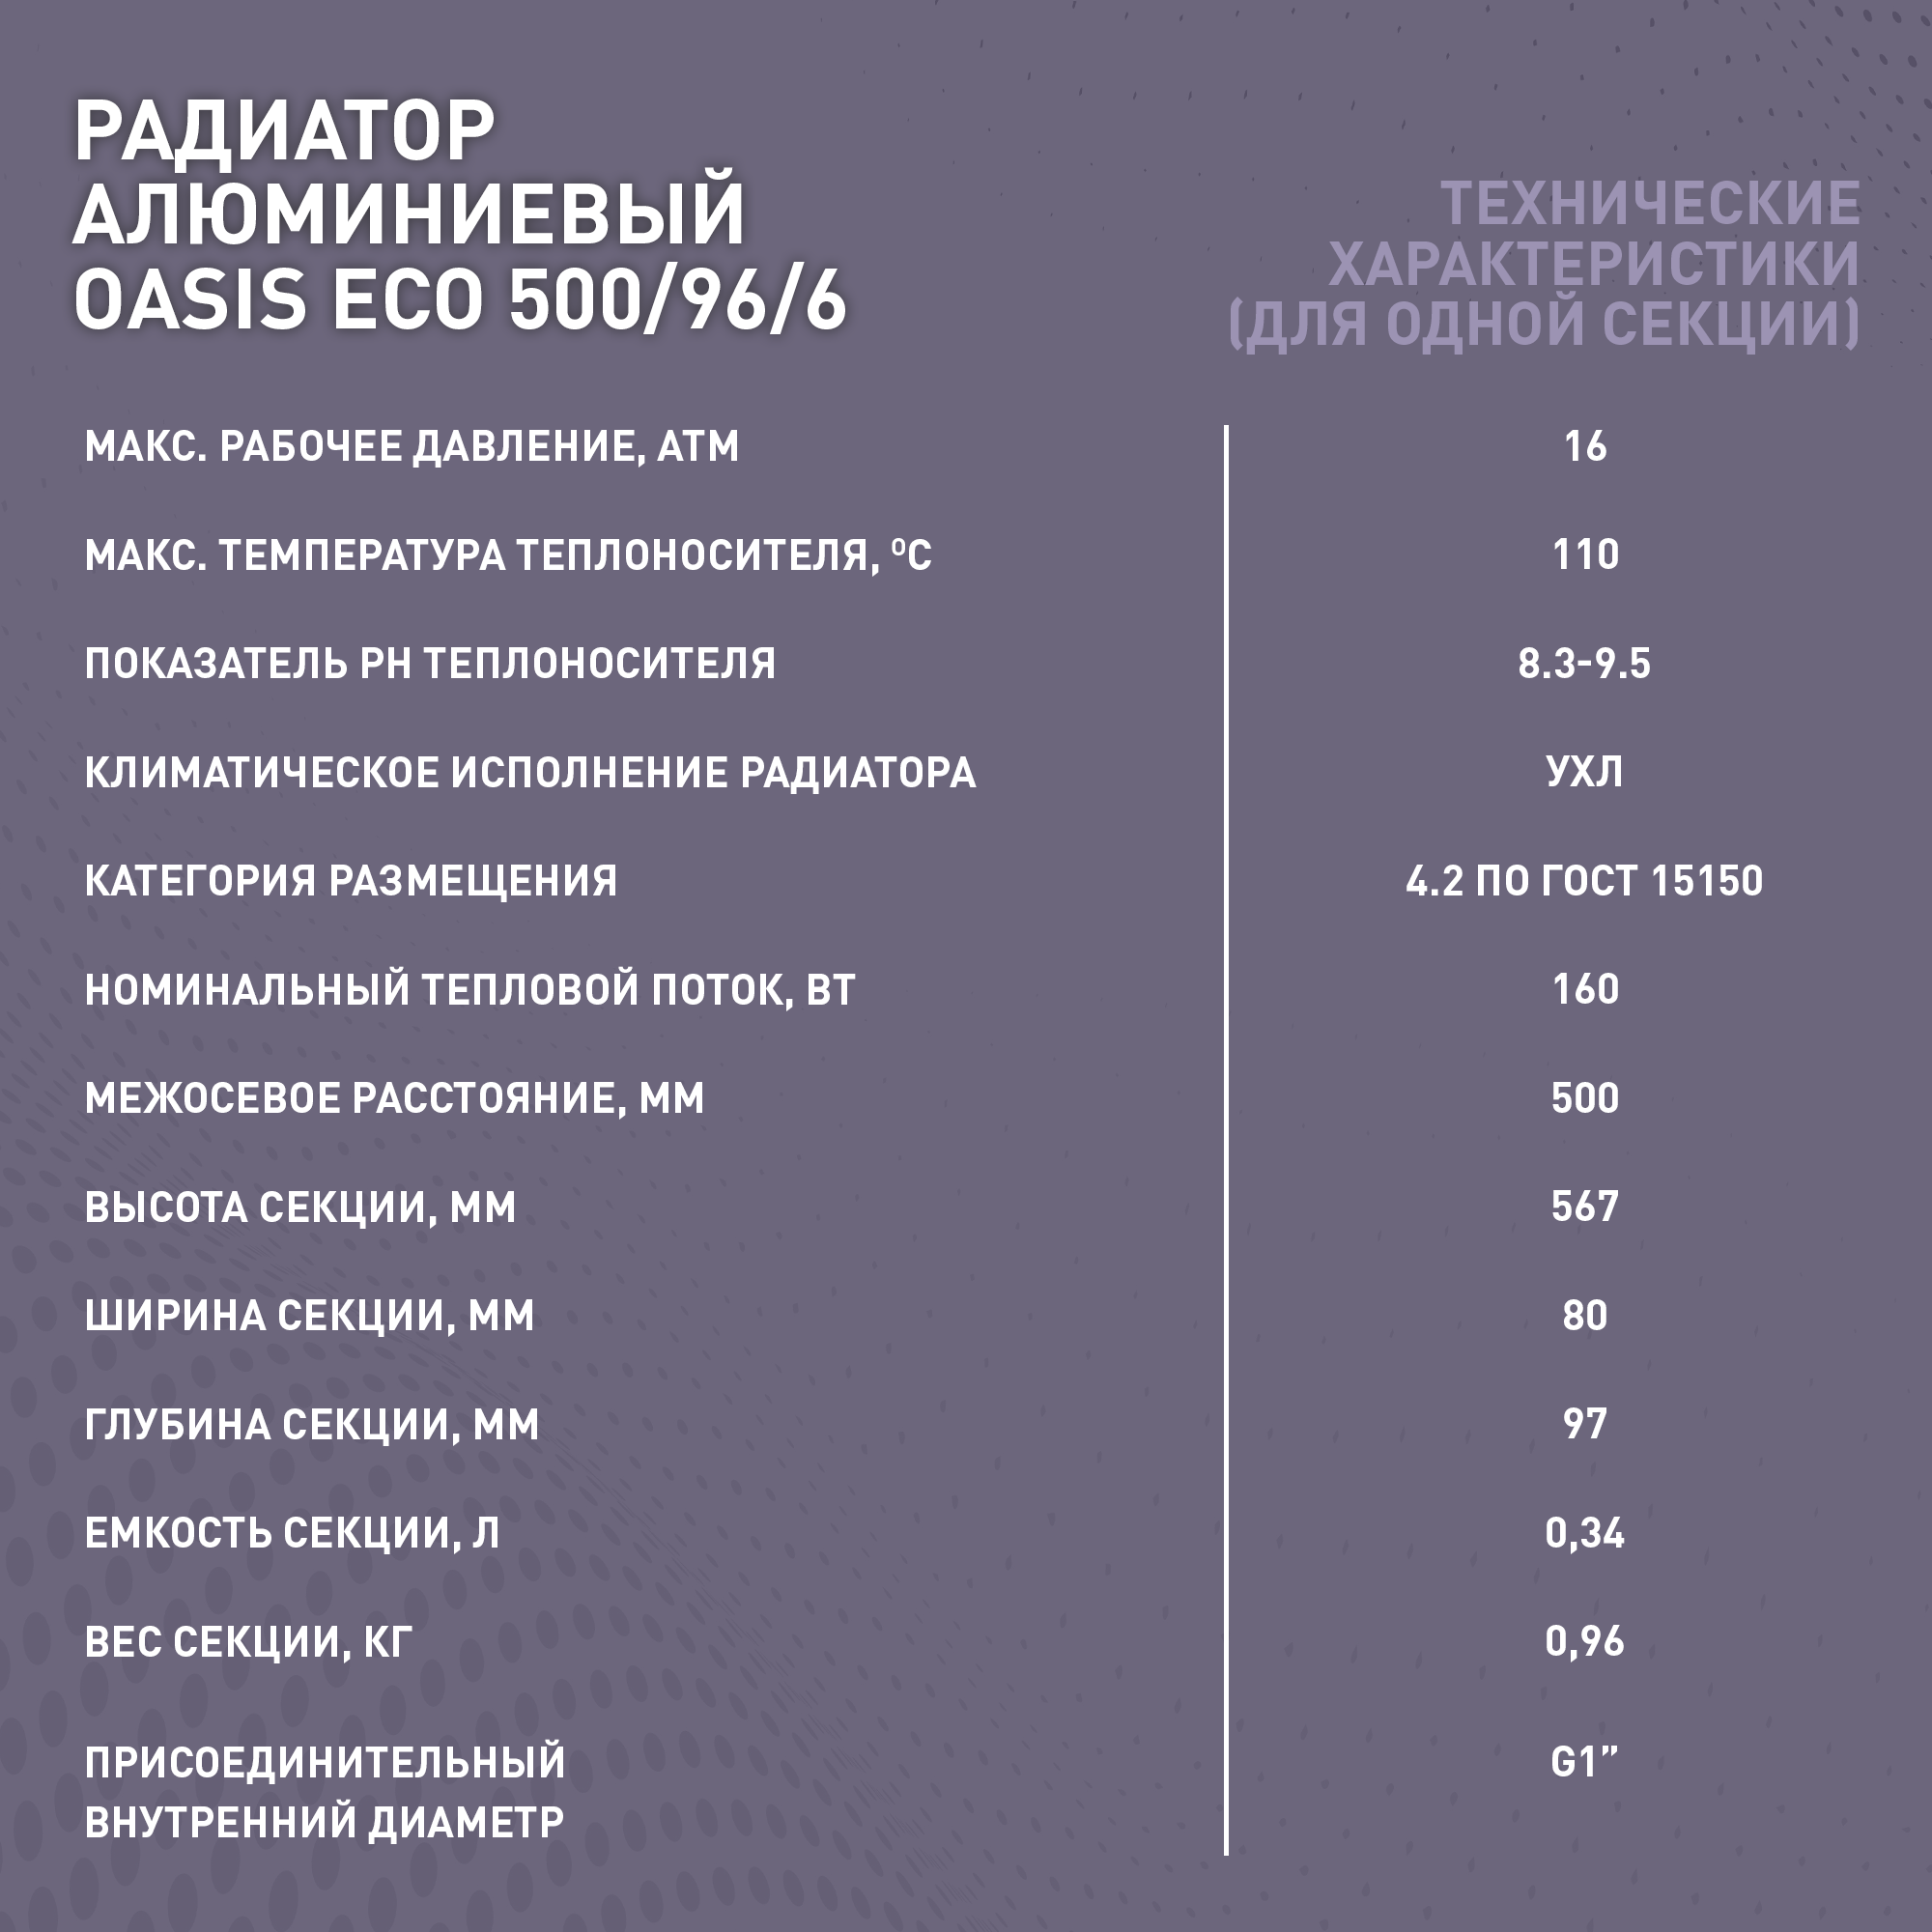 Радиатор отопления алюминиевые Oasis Eco, модель 500/96/6, 6 секций / батарея